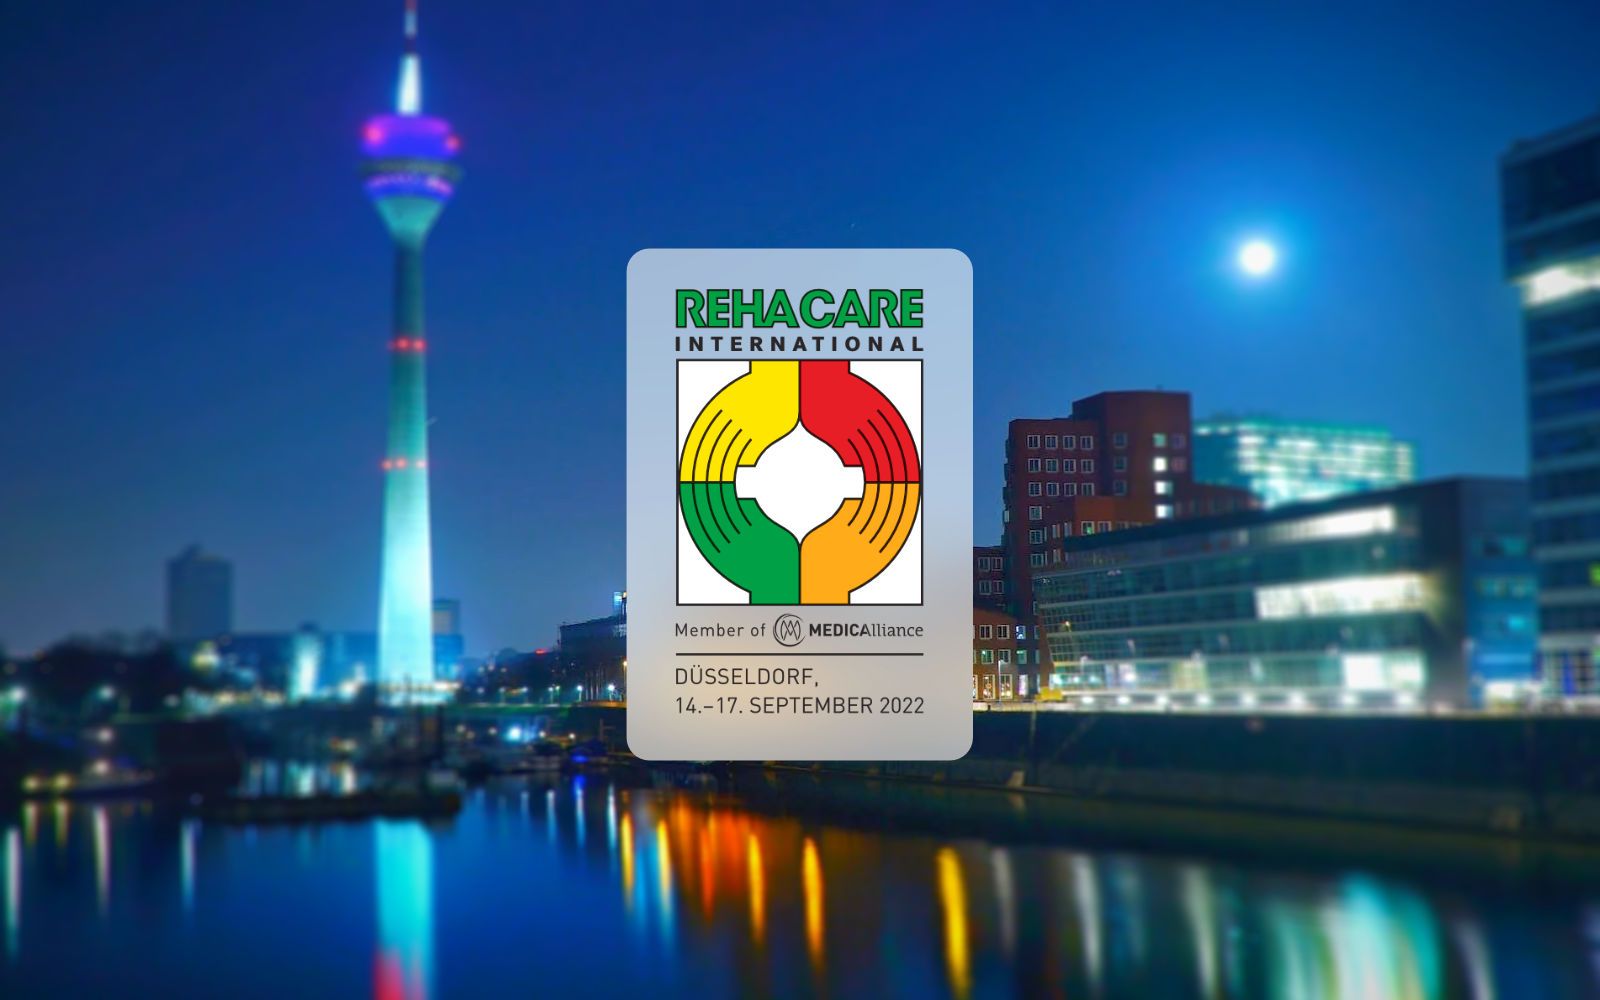 Ein Bild von Düsseldorf und das Rehacare 2022 Logo.